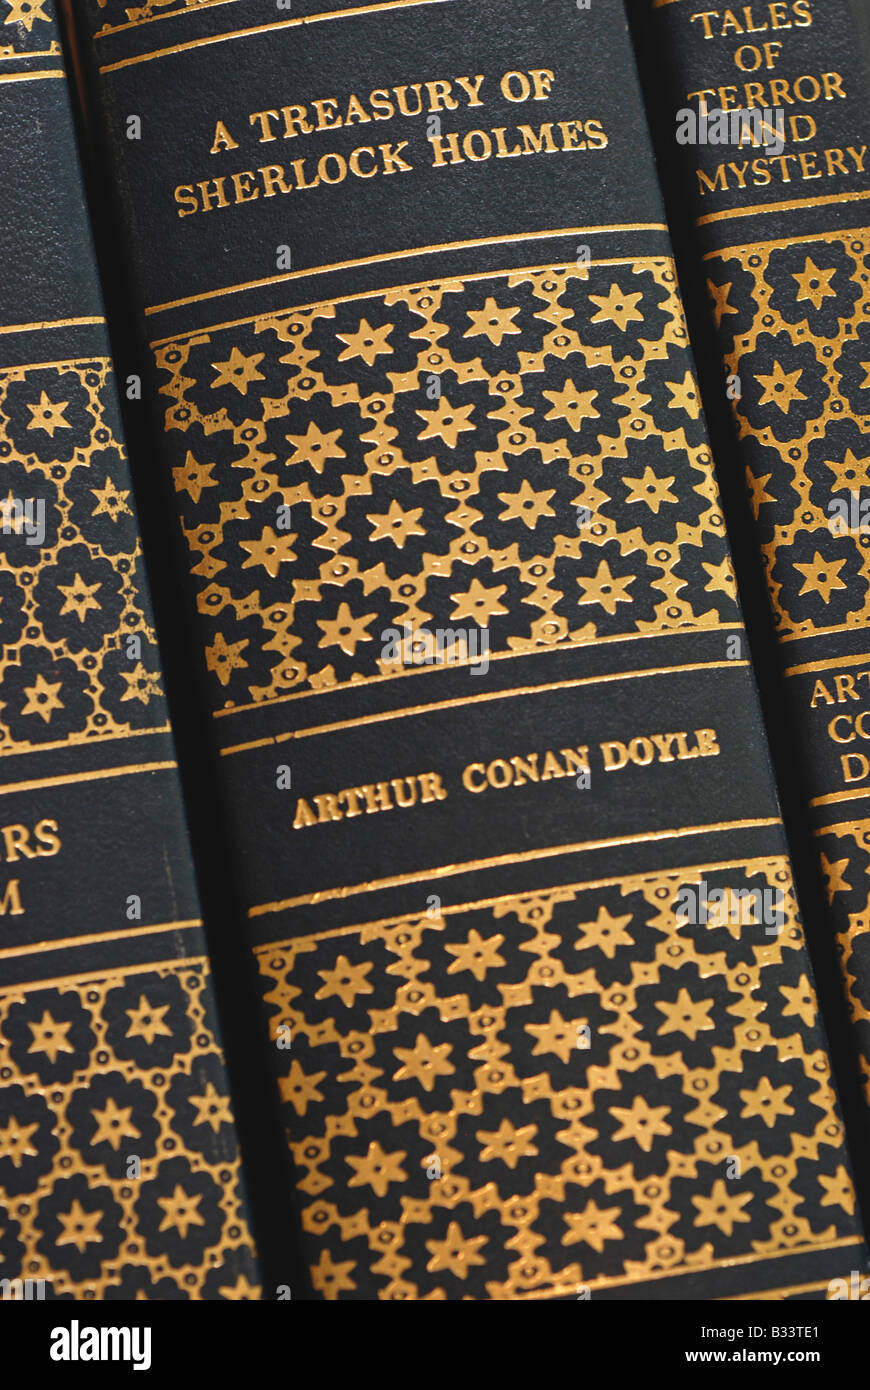 Book Spines, Arthur Conan Doyle, Sherlock Holmes Stock Photo